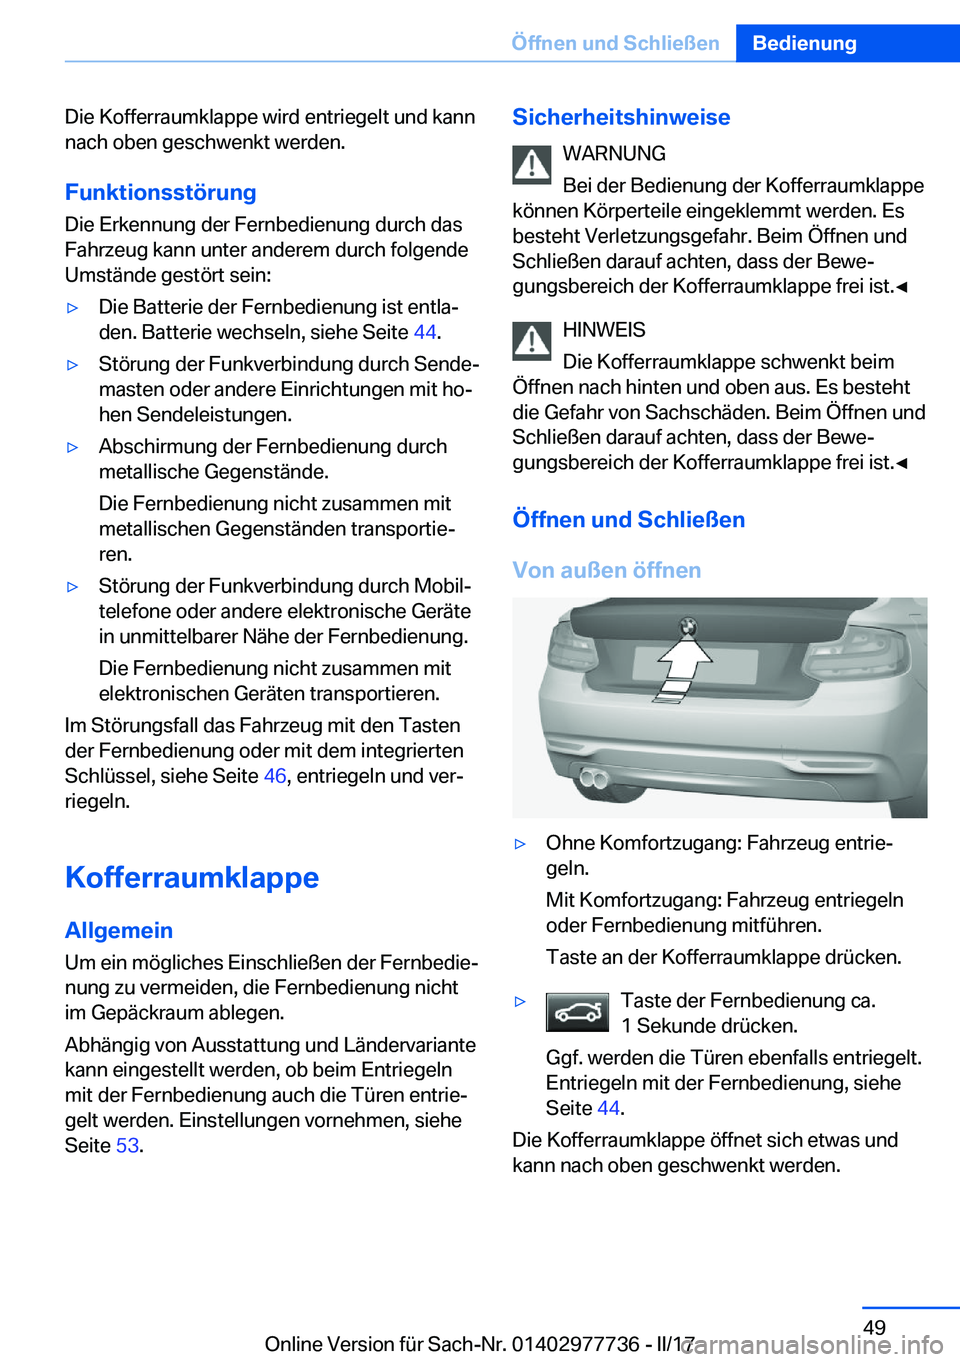 BMW 2 SERIES COUPE 2017  Betriebsanleitungen (in German) �D�i�e� �K�o�f�f�e�r�r�a�u�m�k�l�a�p�p�e� �w�i�r�d� �e�n�t�r�i�e�g�e�l�t� �u�n�d� �k�a�n�n�n�a�c�h� �o�b�e�n� �g�e�s�c�h�w�e�n�k�t� �w�e�r�d�e�n�.
�F�u�n�k�t�i�o�n�s�s�t�